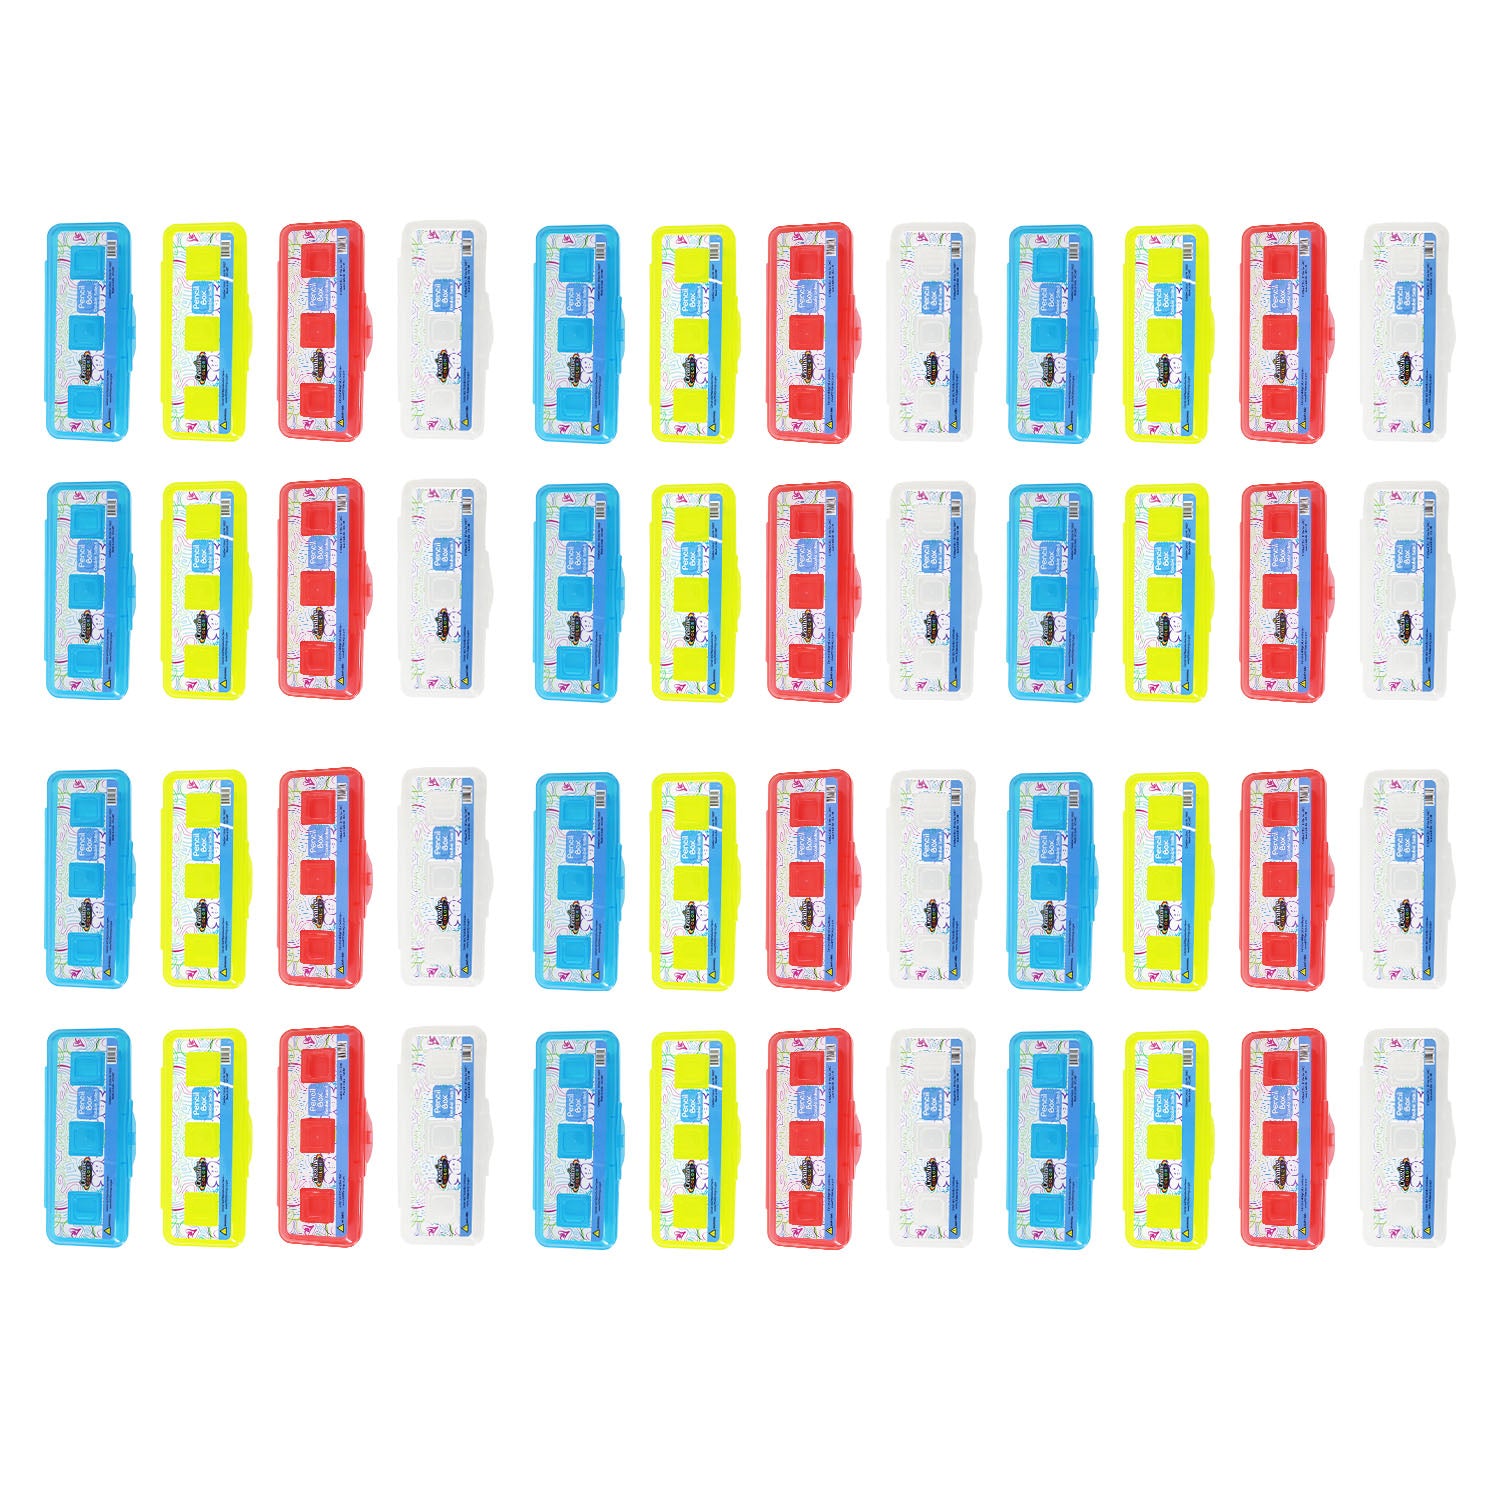 Assorted Color Pencil Boxes - Bulk School Supplies Wholesale Case of 48 Pencil Boxes